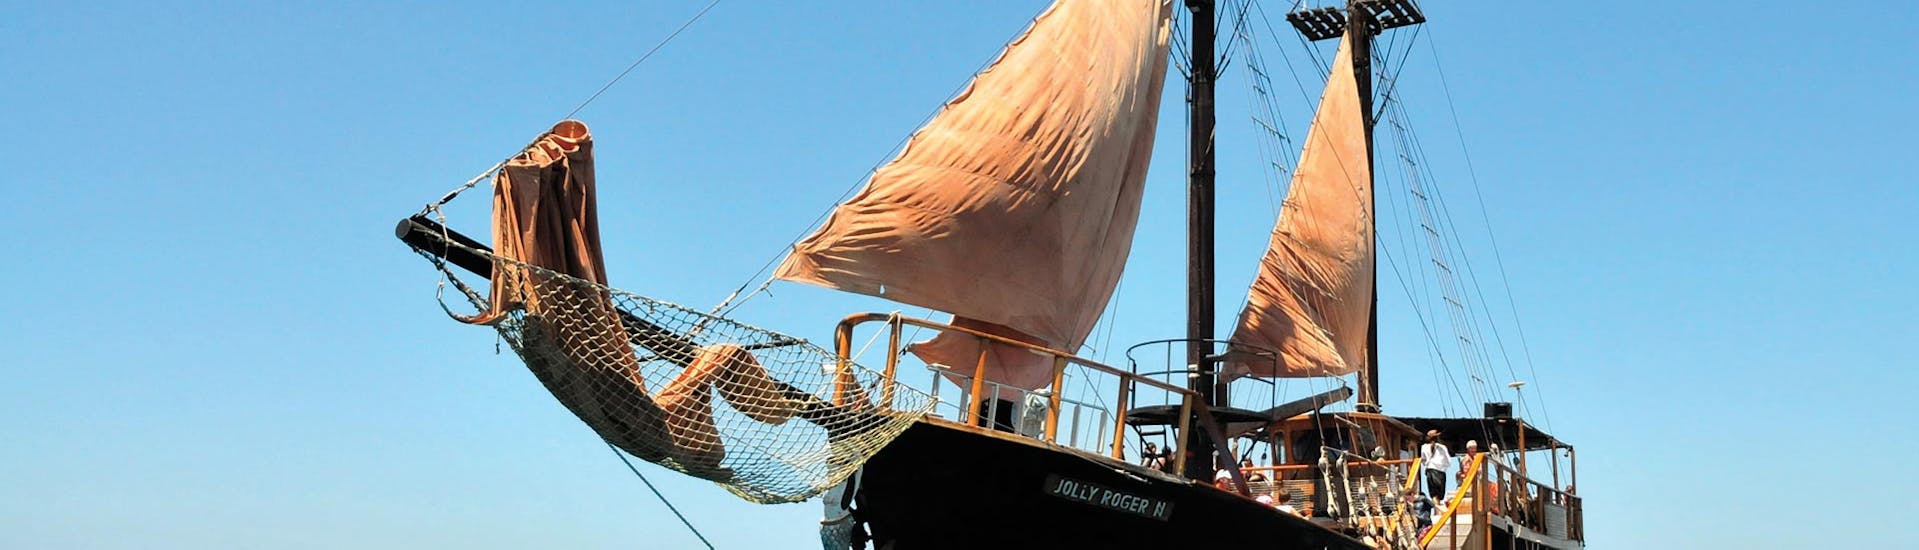 Photo du Jolly Roger, le navire utilisé pour la balade en bateau pirate de Paphos à la plage de Rikkos avec Paphos Sea Cruises